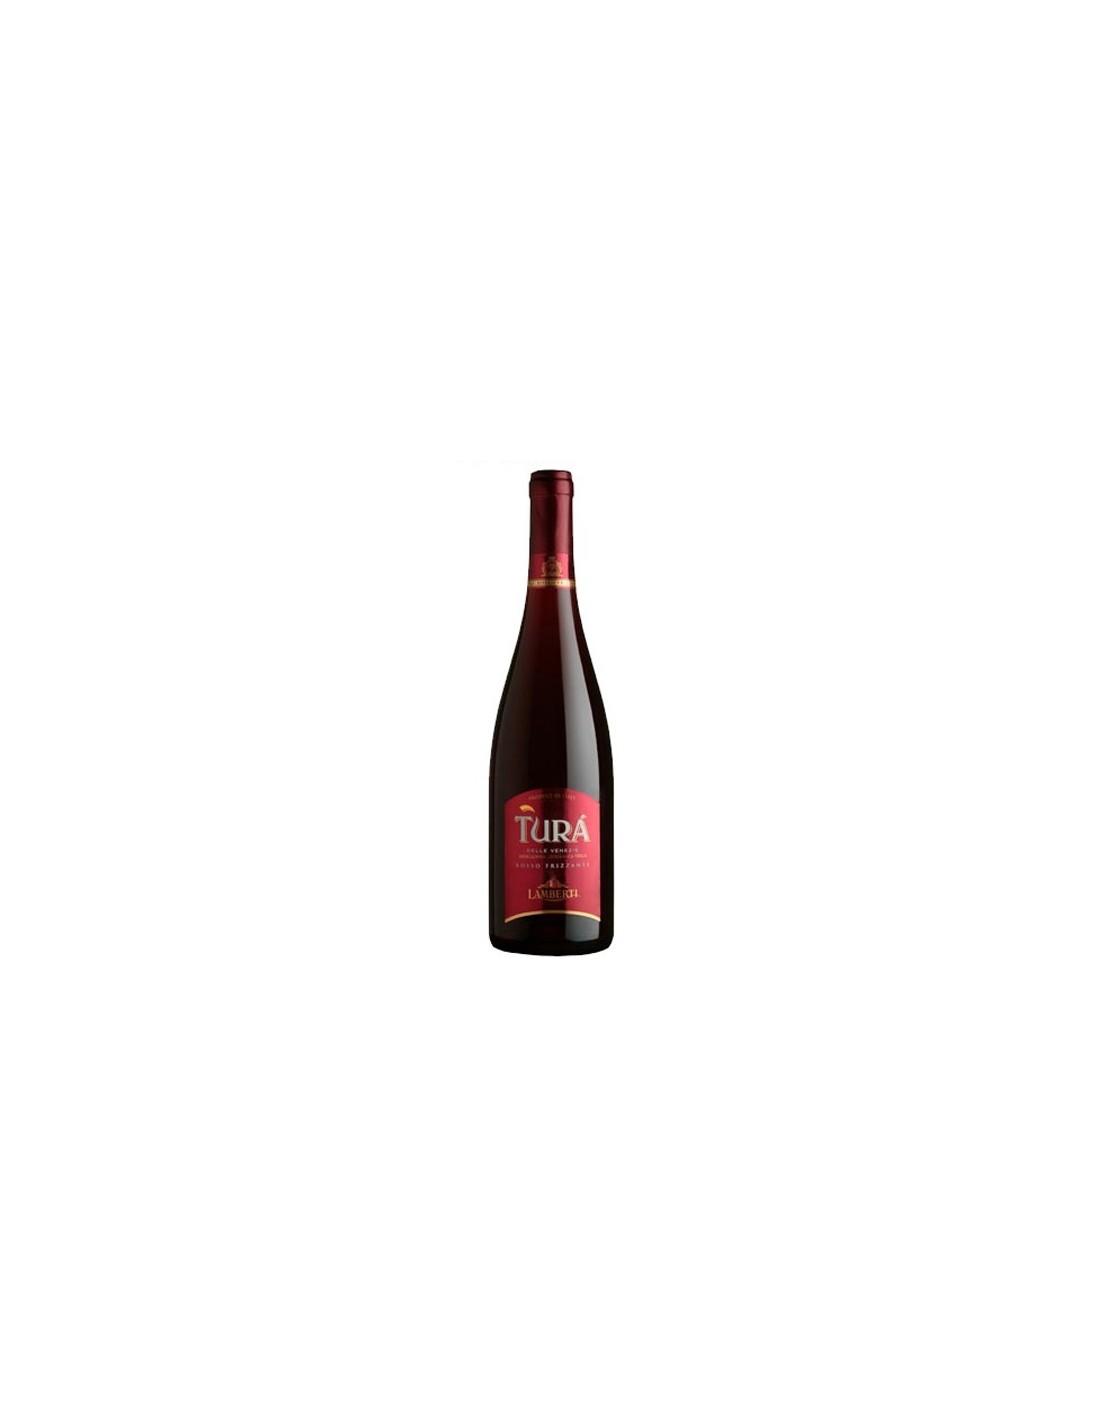 Vin frizzante rosu, Lamberti Turá Veneto, 0.75L, 11.5% alc., Italia alcooldiscount.ro